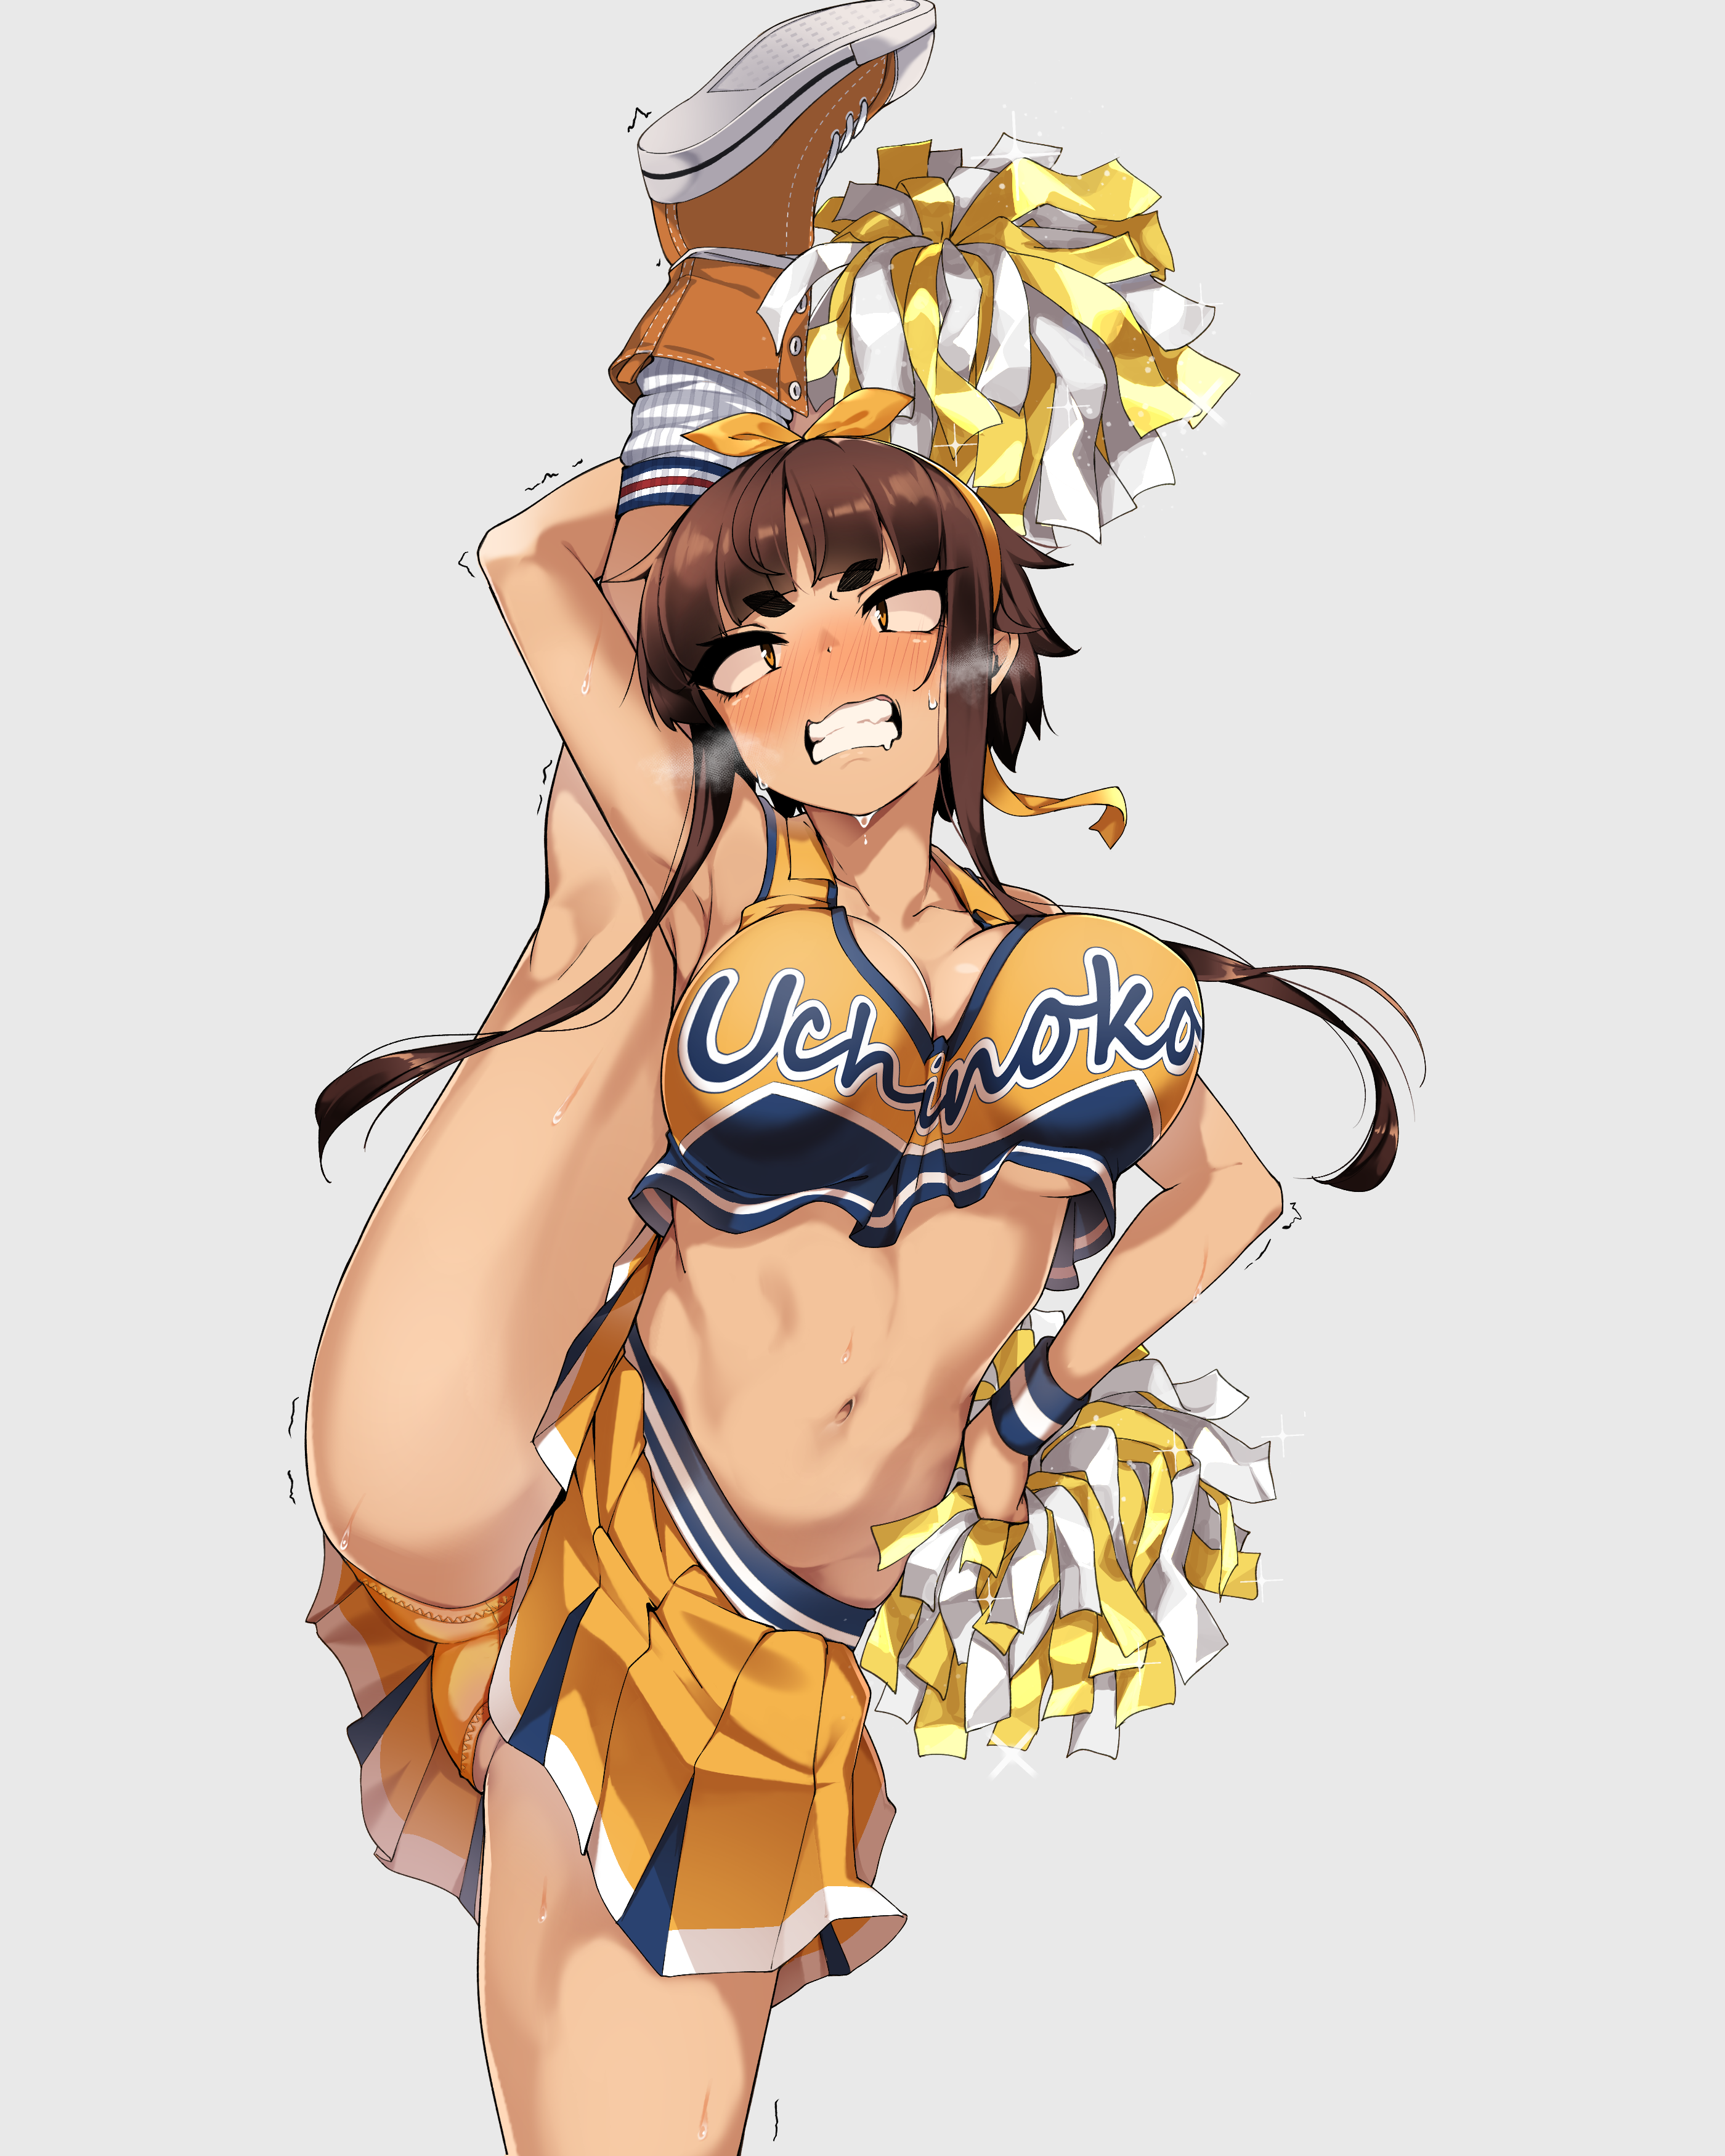 Anime 2800x3500 anime anime girls digital art artwork 2D portrait display cleavage belly panties cheerleaders brunette Jovejun splits standing